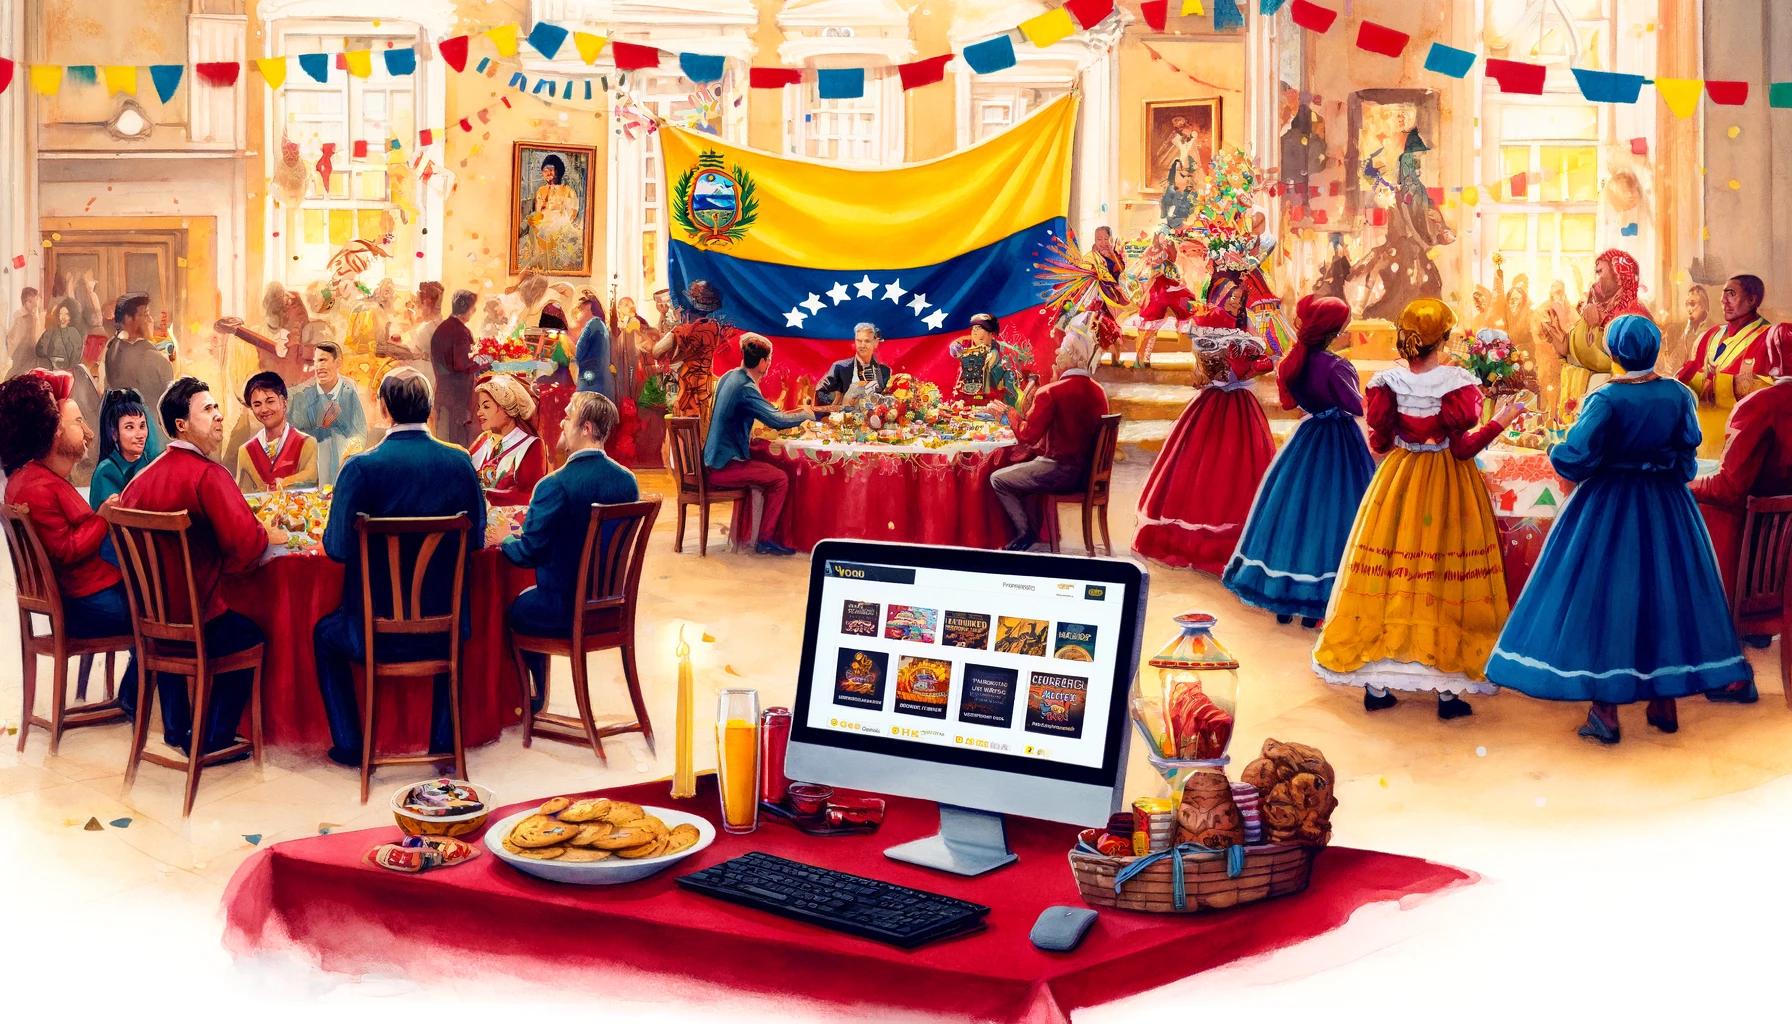 Prazos e entretenimento: Celebre as tradições venezuelanas e ganhe com Vavada